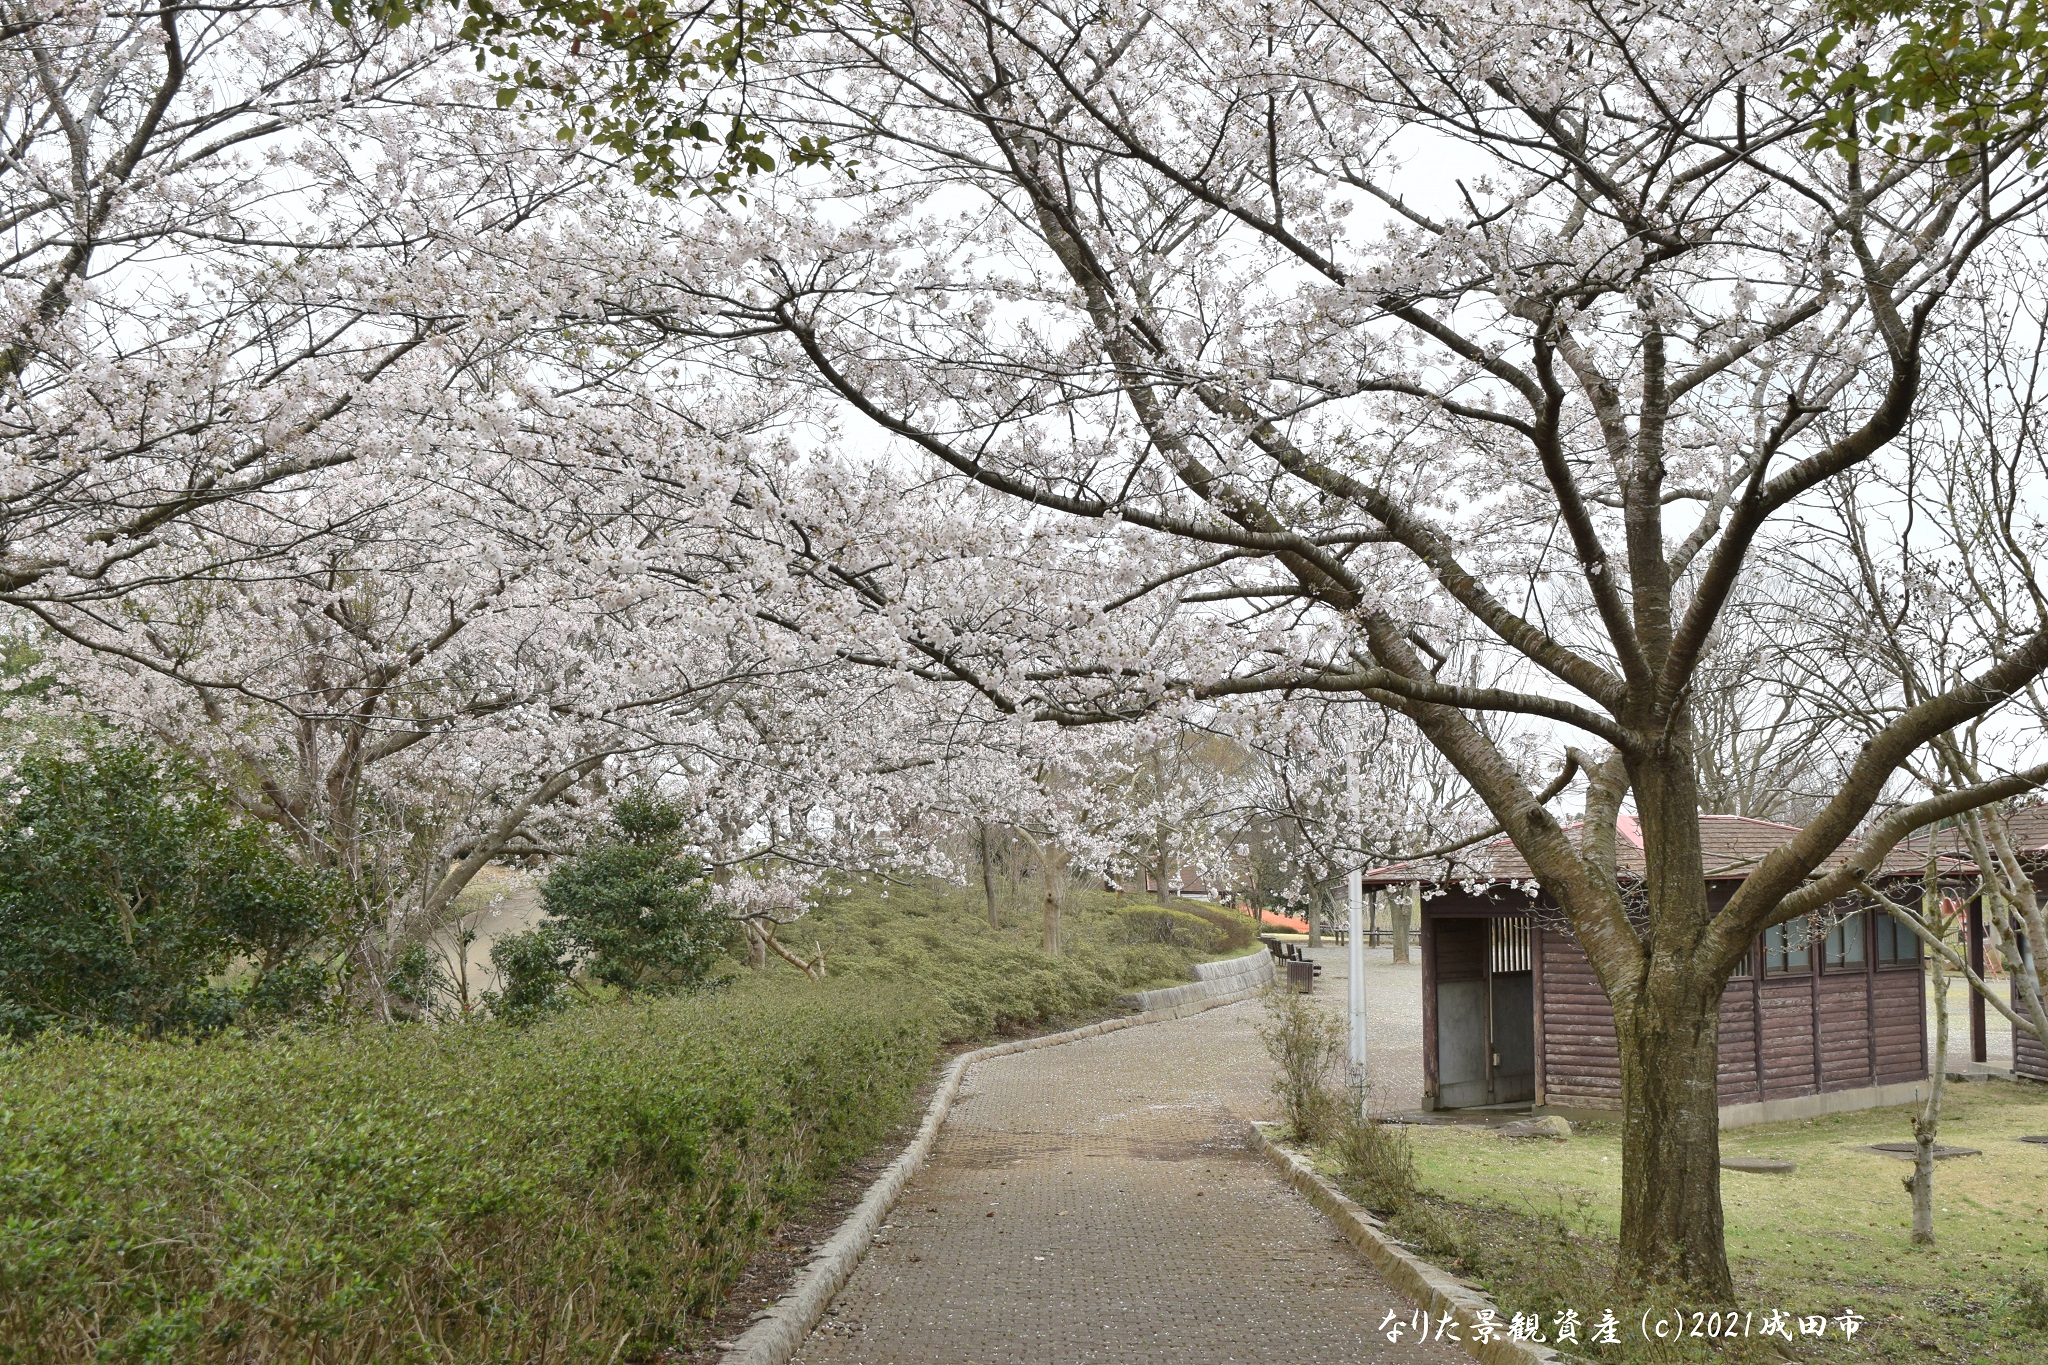 グリーンウォーターパークと桜の景観写真2